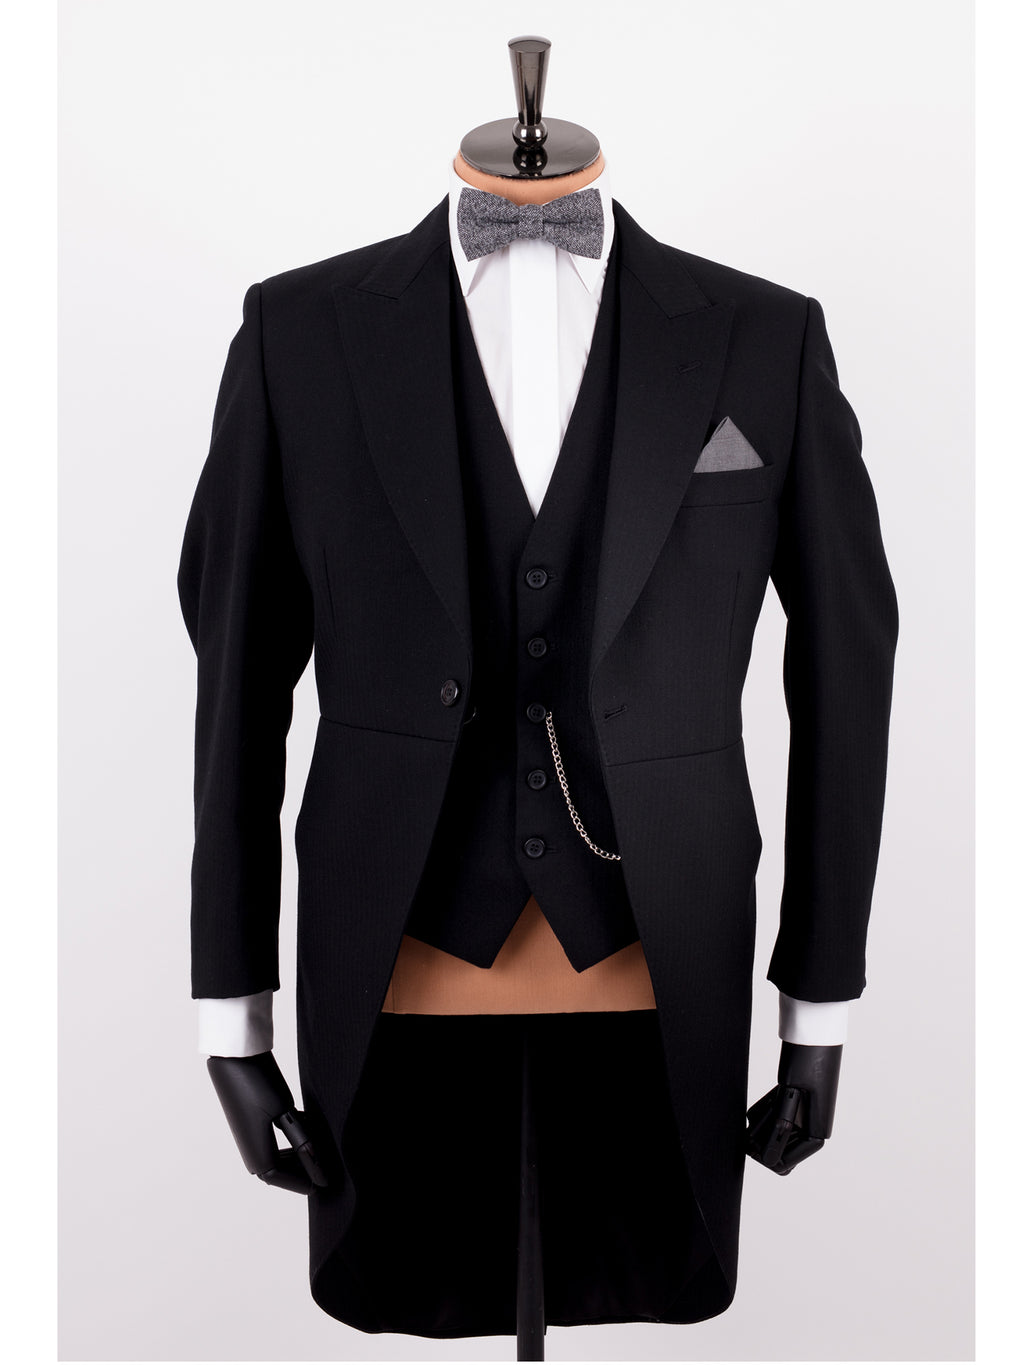 black-tailcoat-suit-hire-belfast